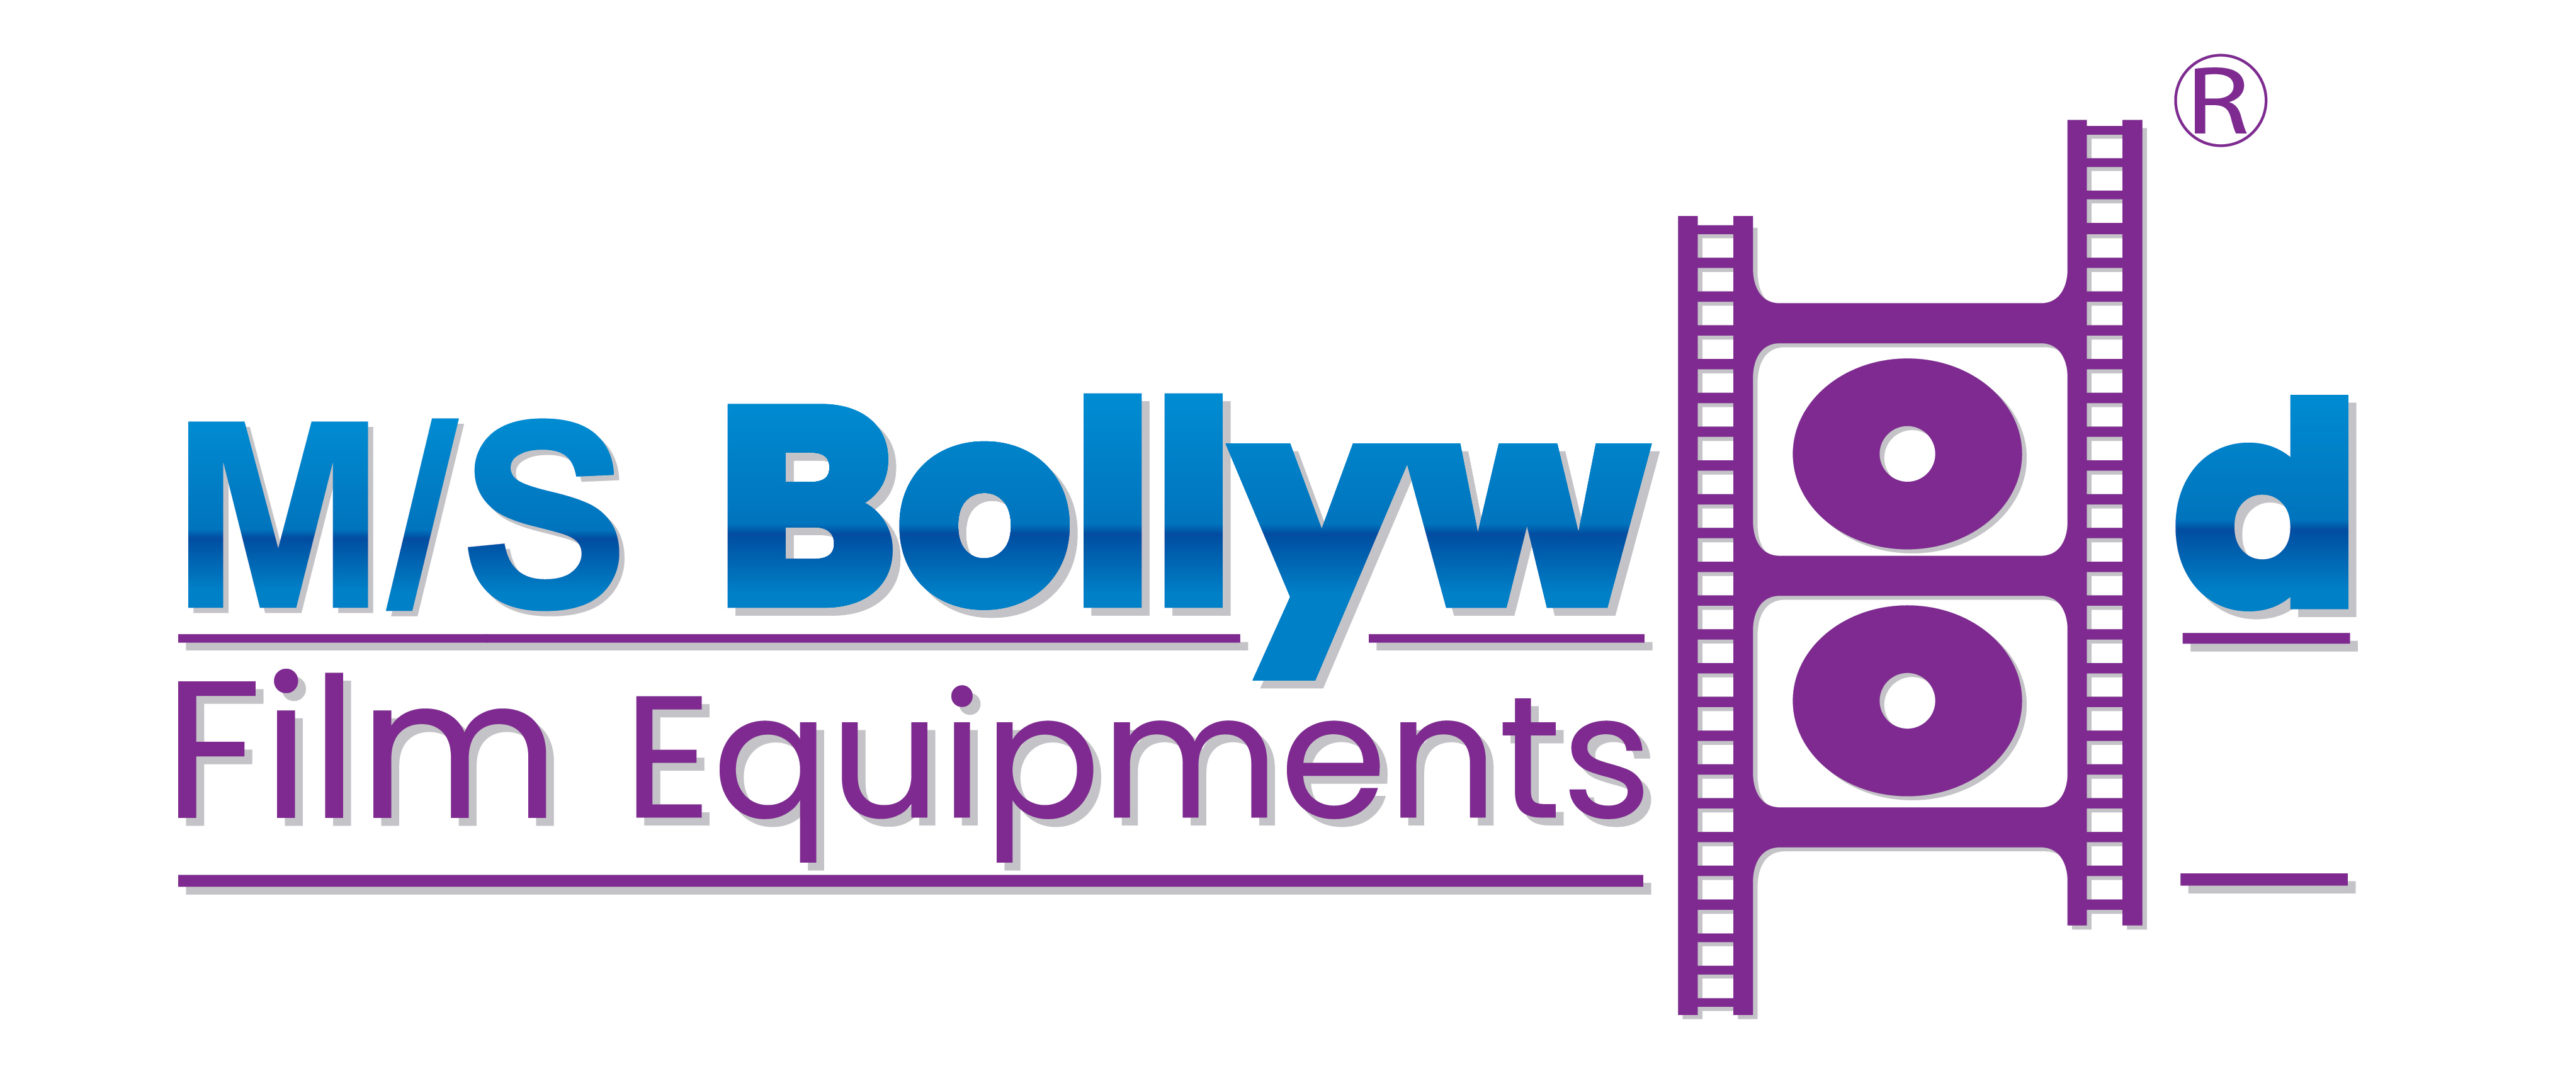 Bollywood Film Equipments